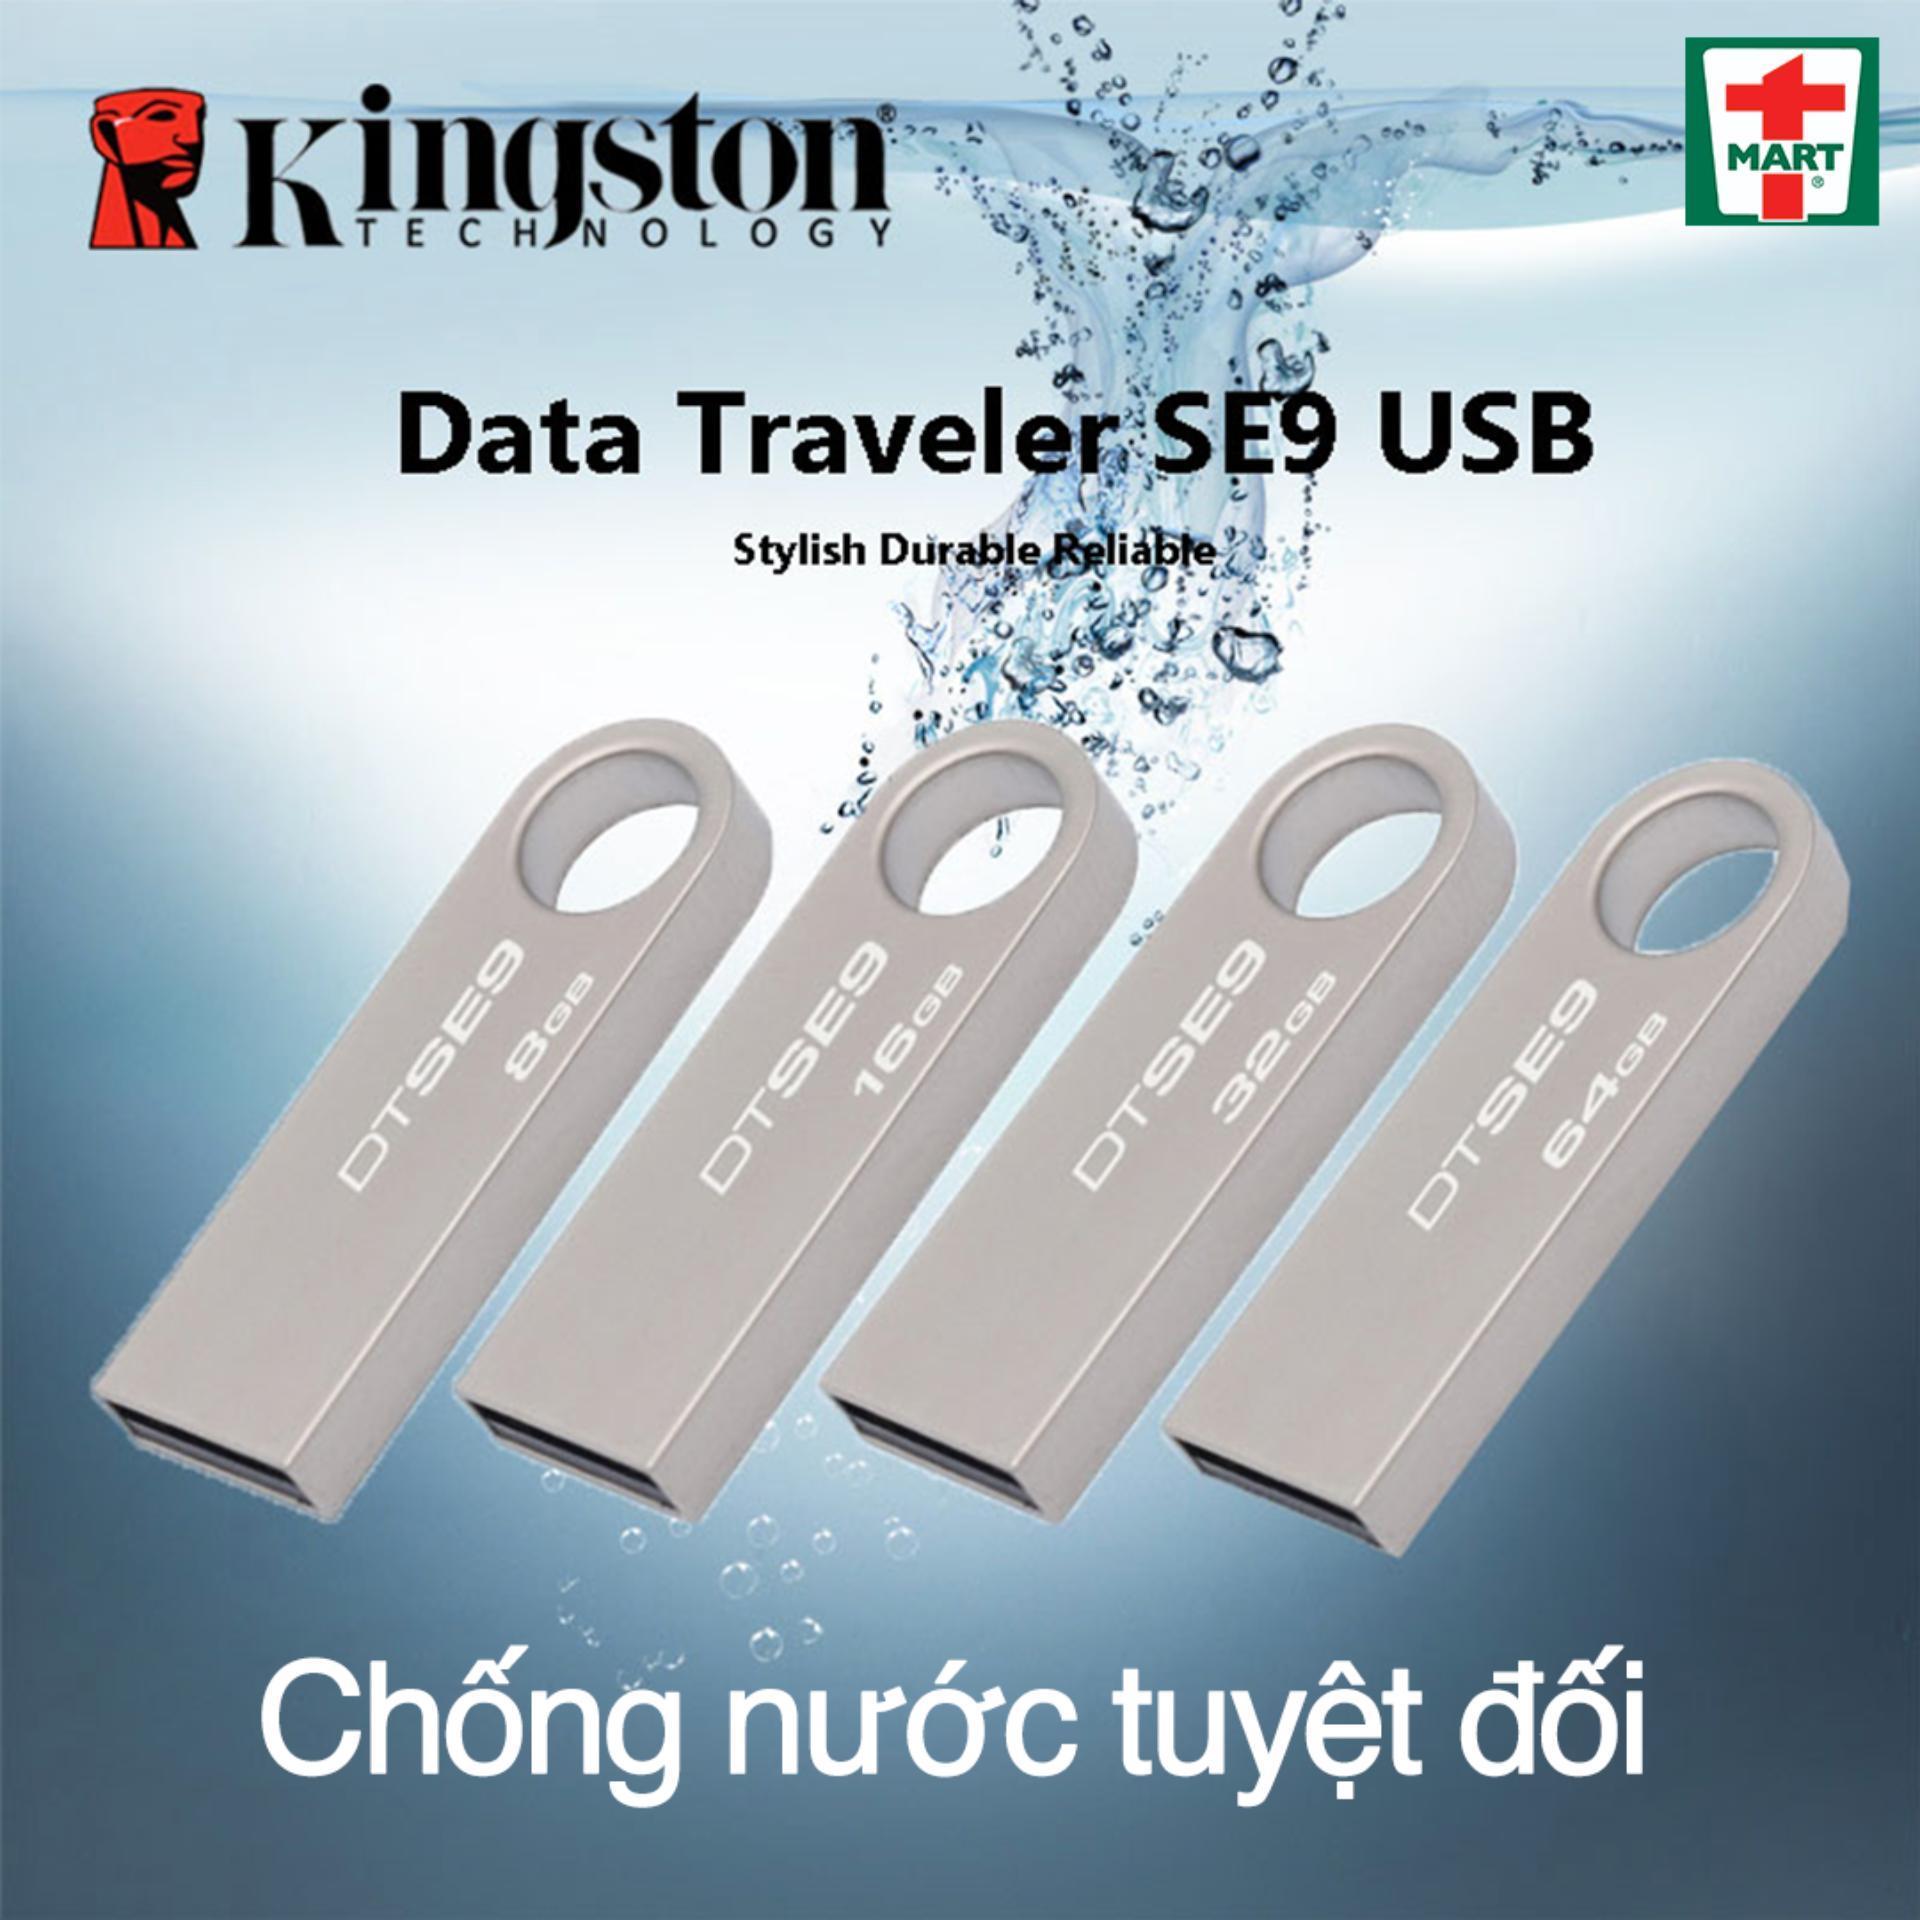 USB 32GB Kingston chính hãng vỏ kim loại , sao chép dữ liệu nhanh, usb chống nước - Bảo hành...